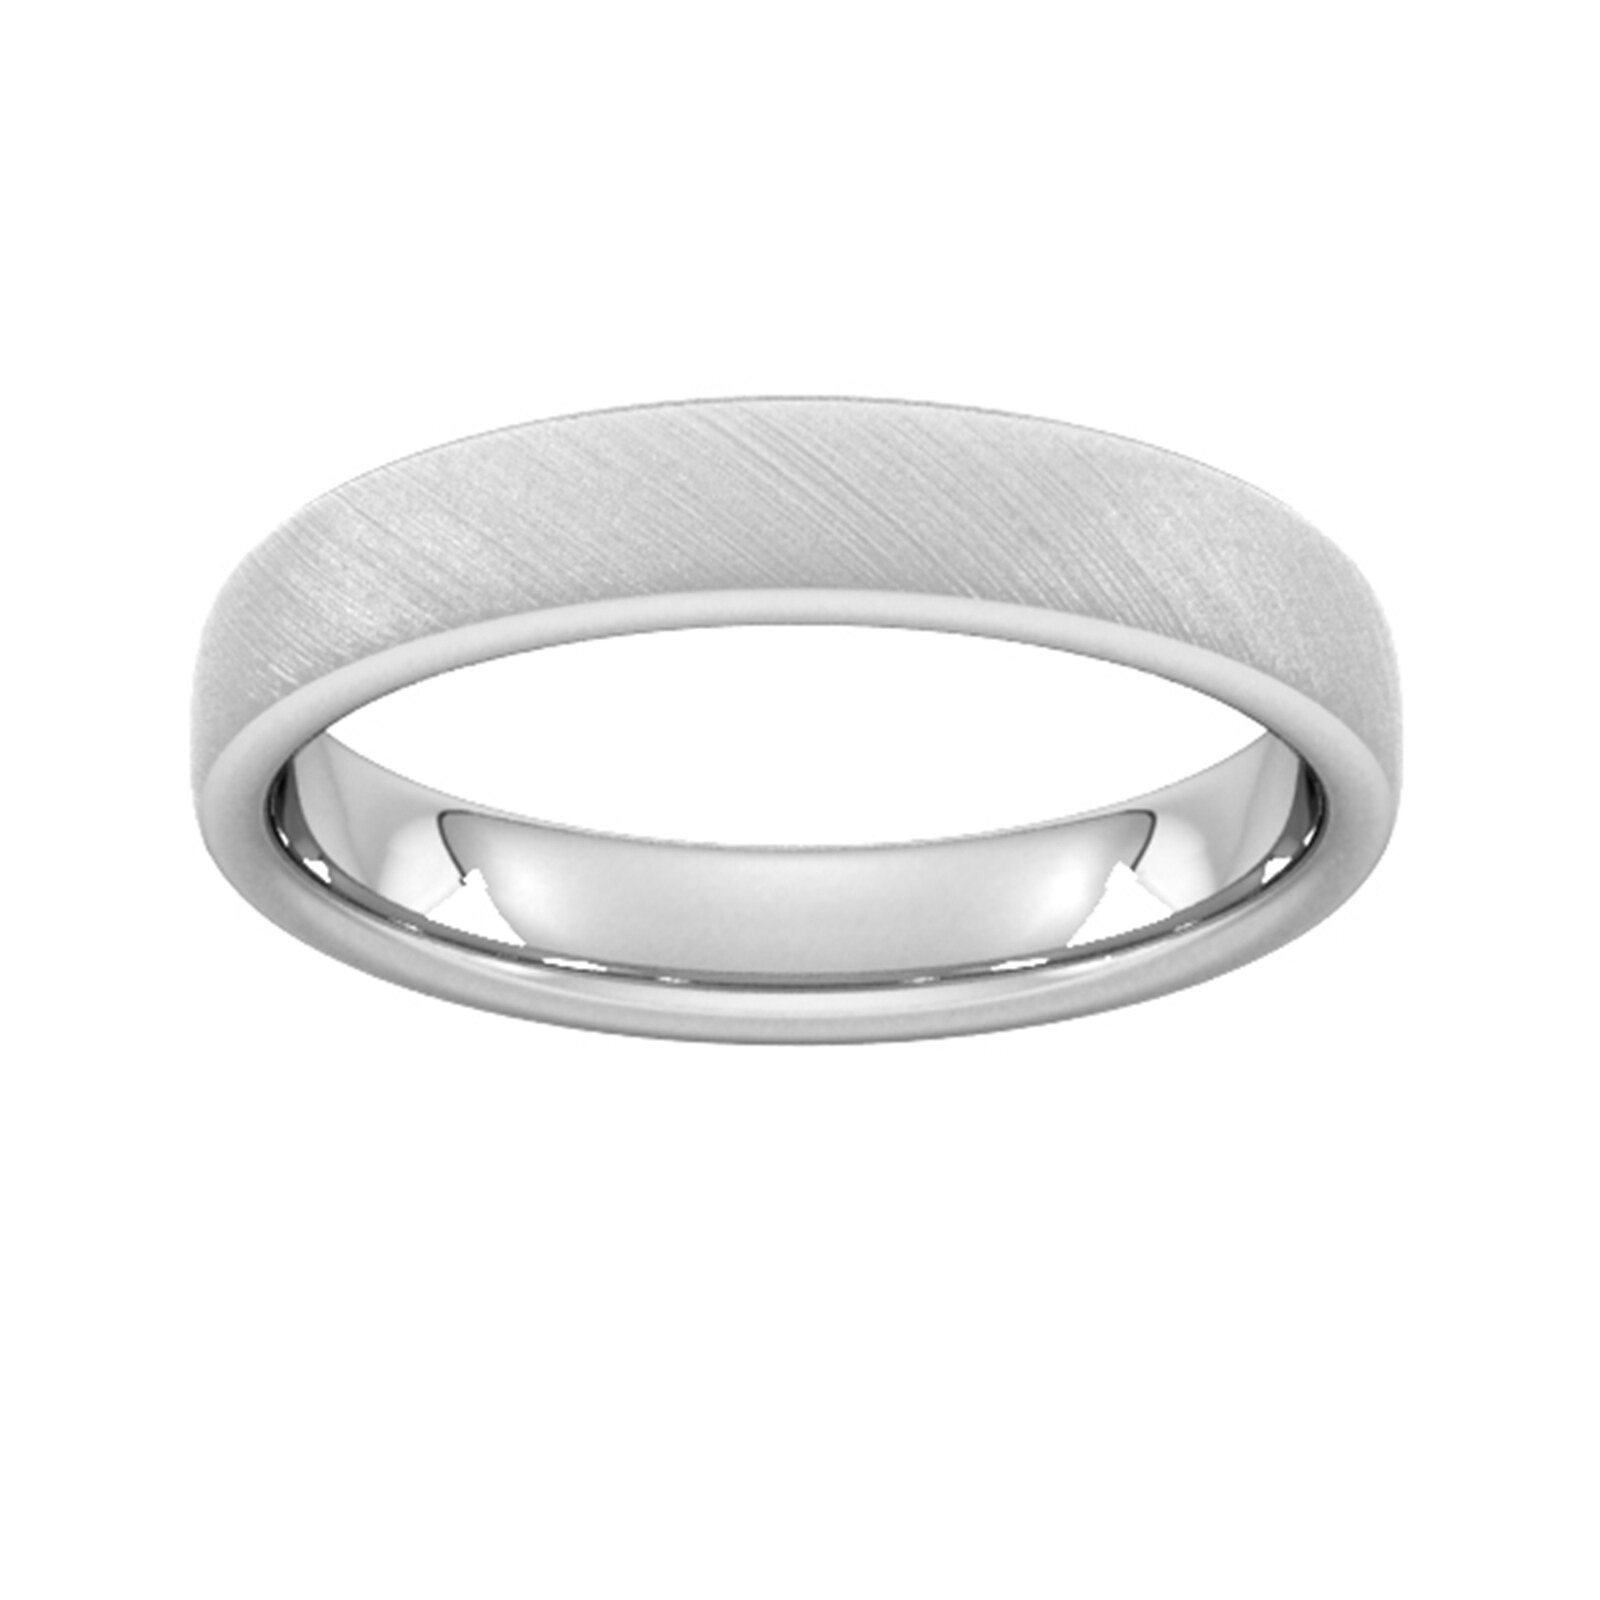 4mm Slight Court Extra Heavy Diagonal Matt Finish Wedding Ring In 950 Palladium - Ring Size Y